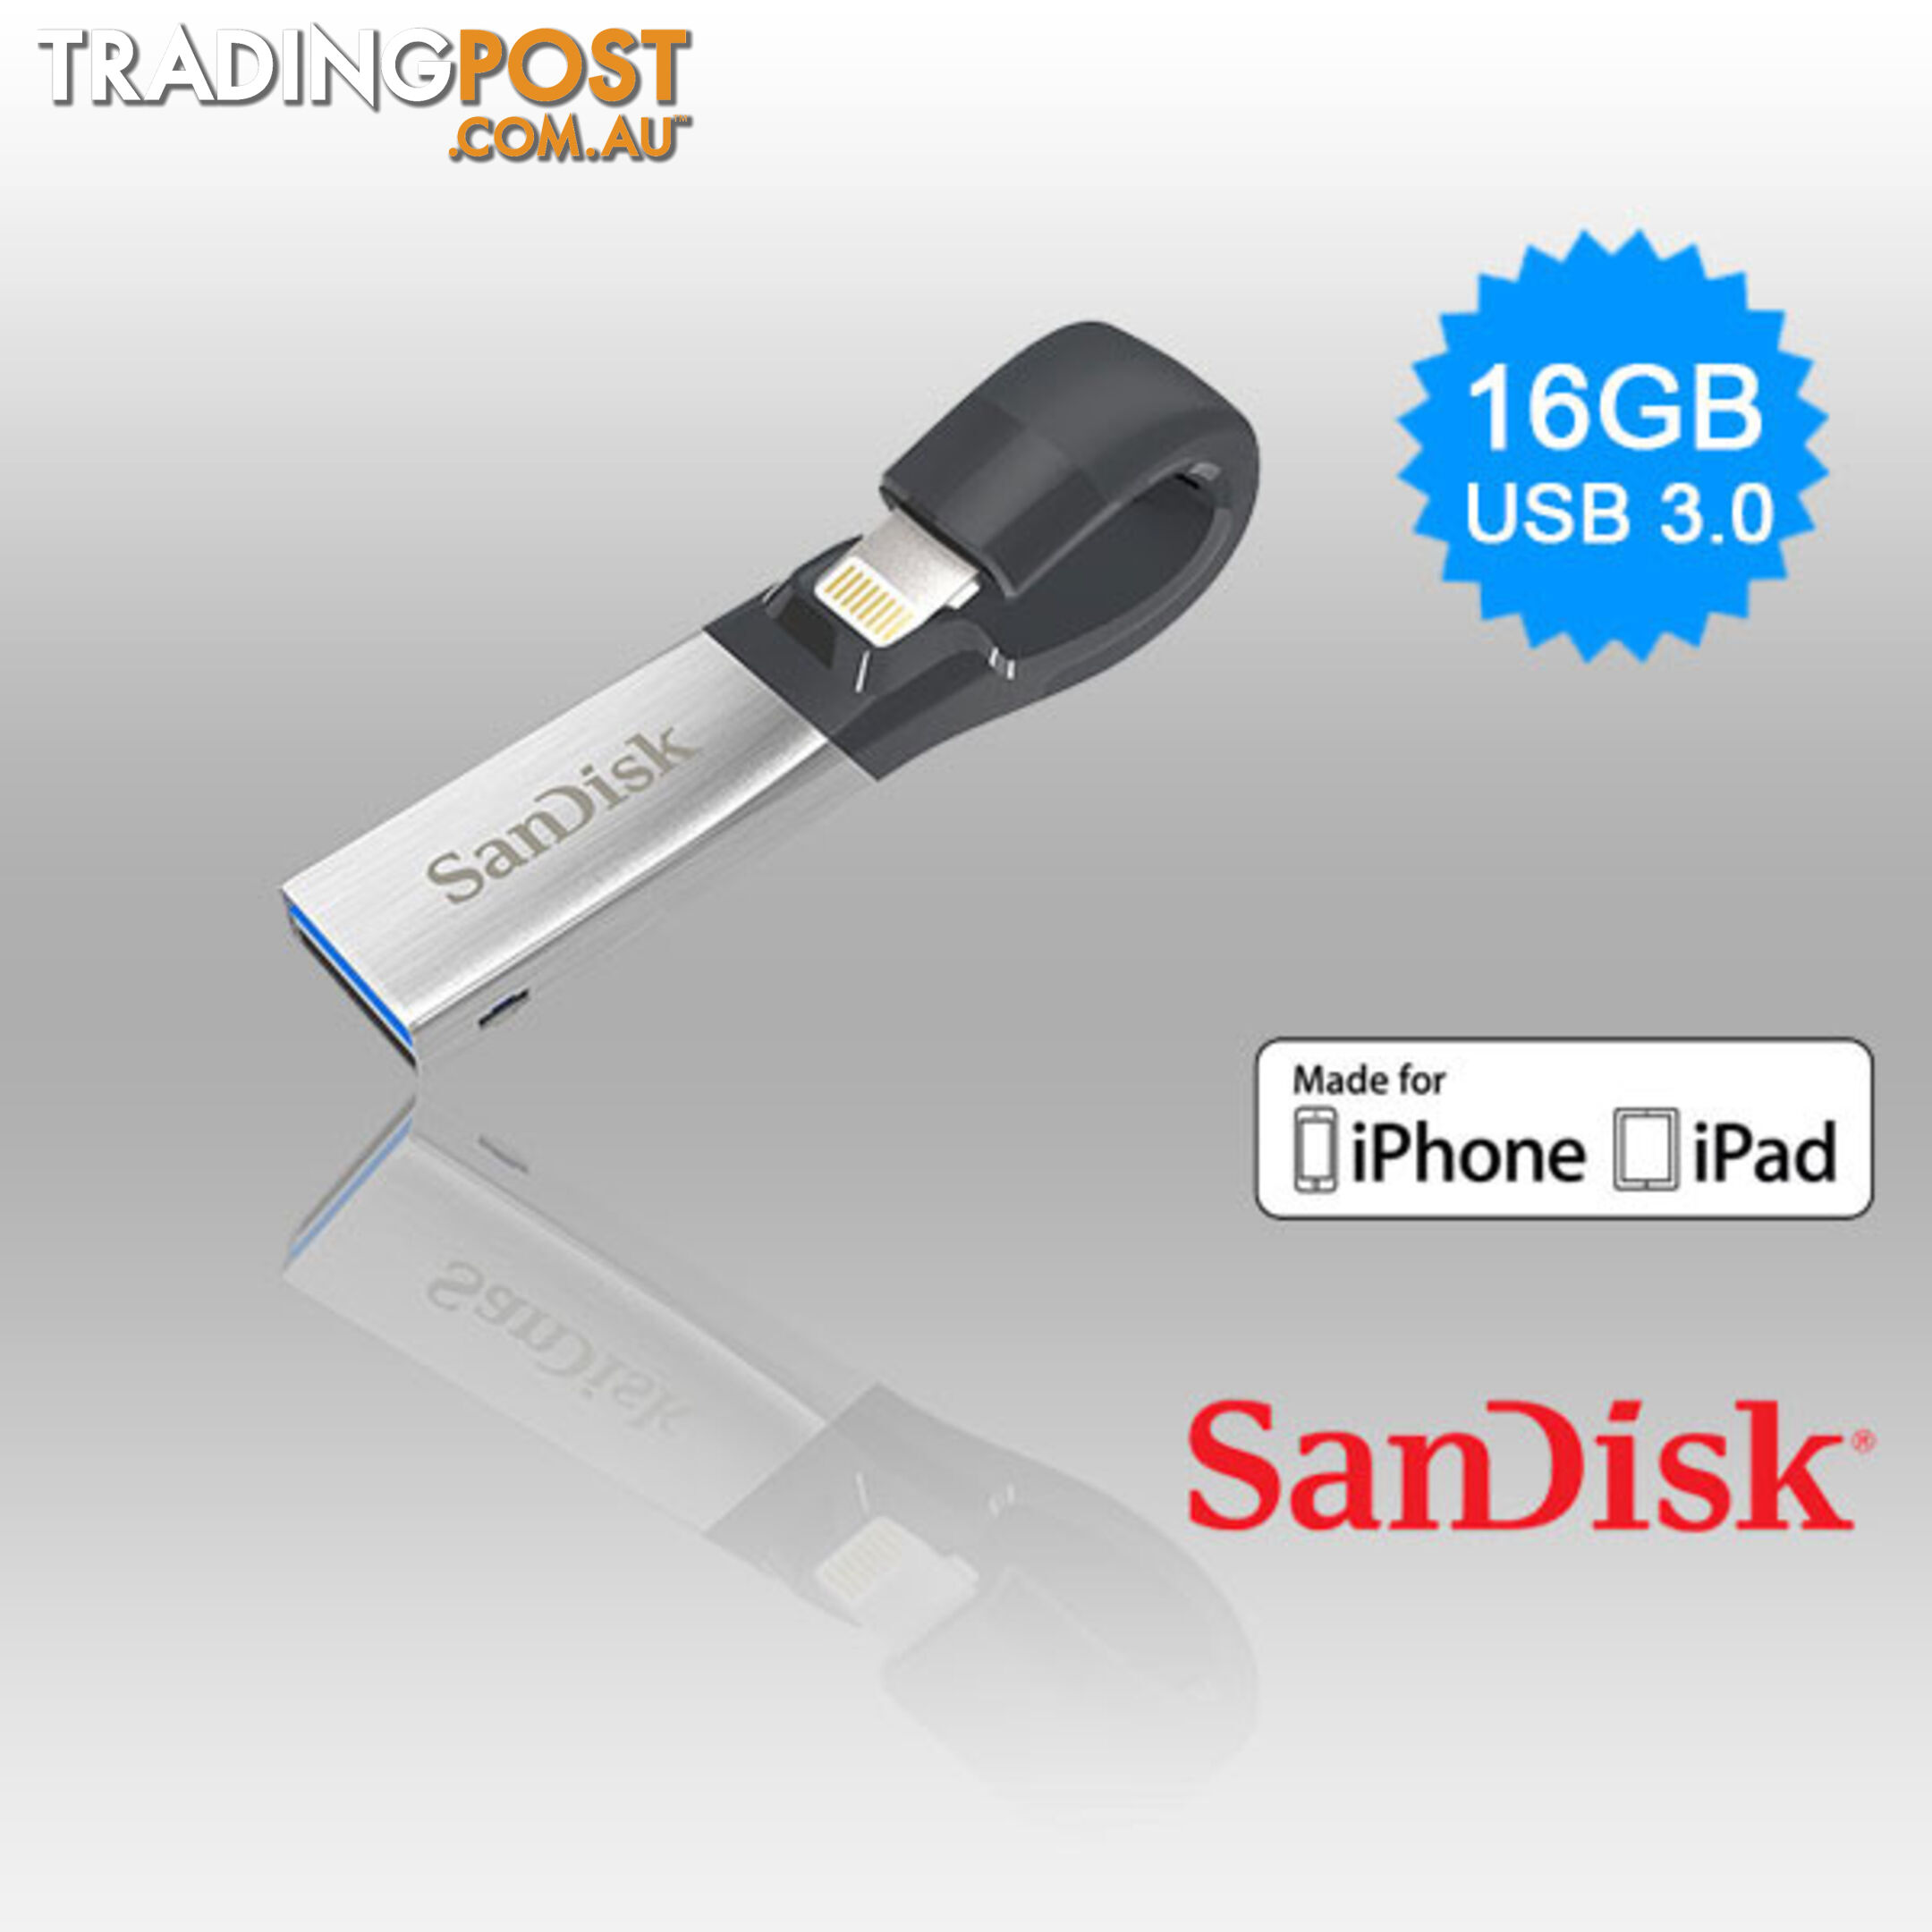 SANDISK IXPAND FLASH DRIVE SDIX30N 32GB GREY IOS USB 3.0  (SDIX30N-032G)